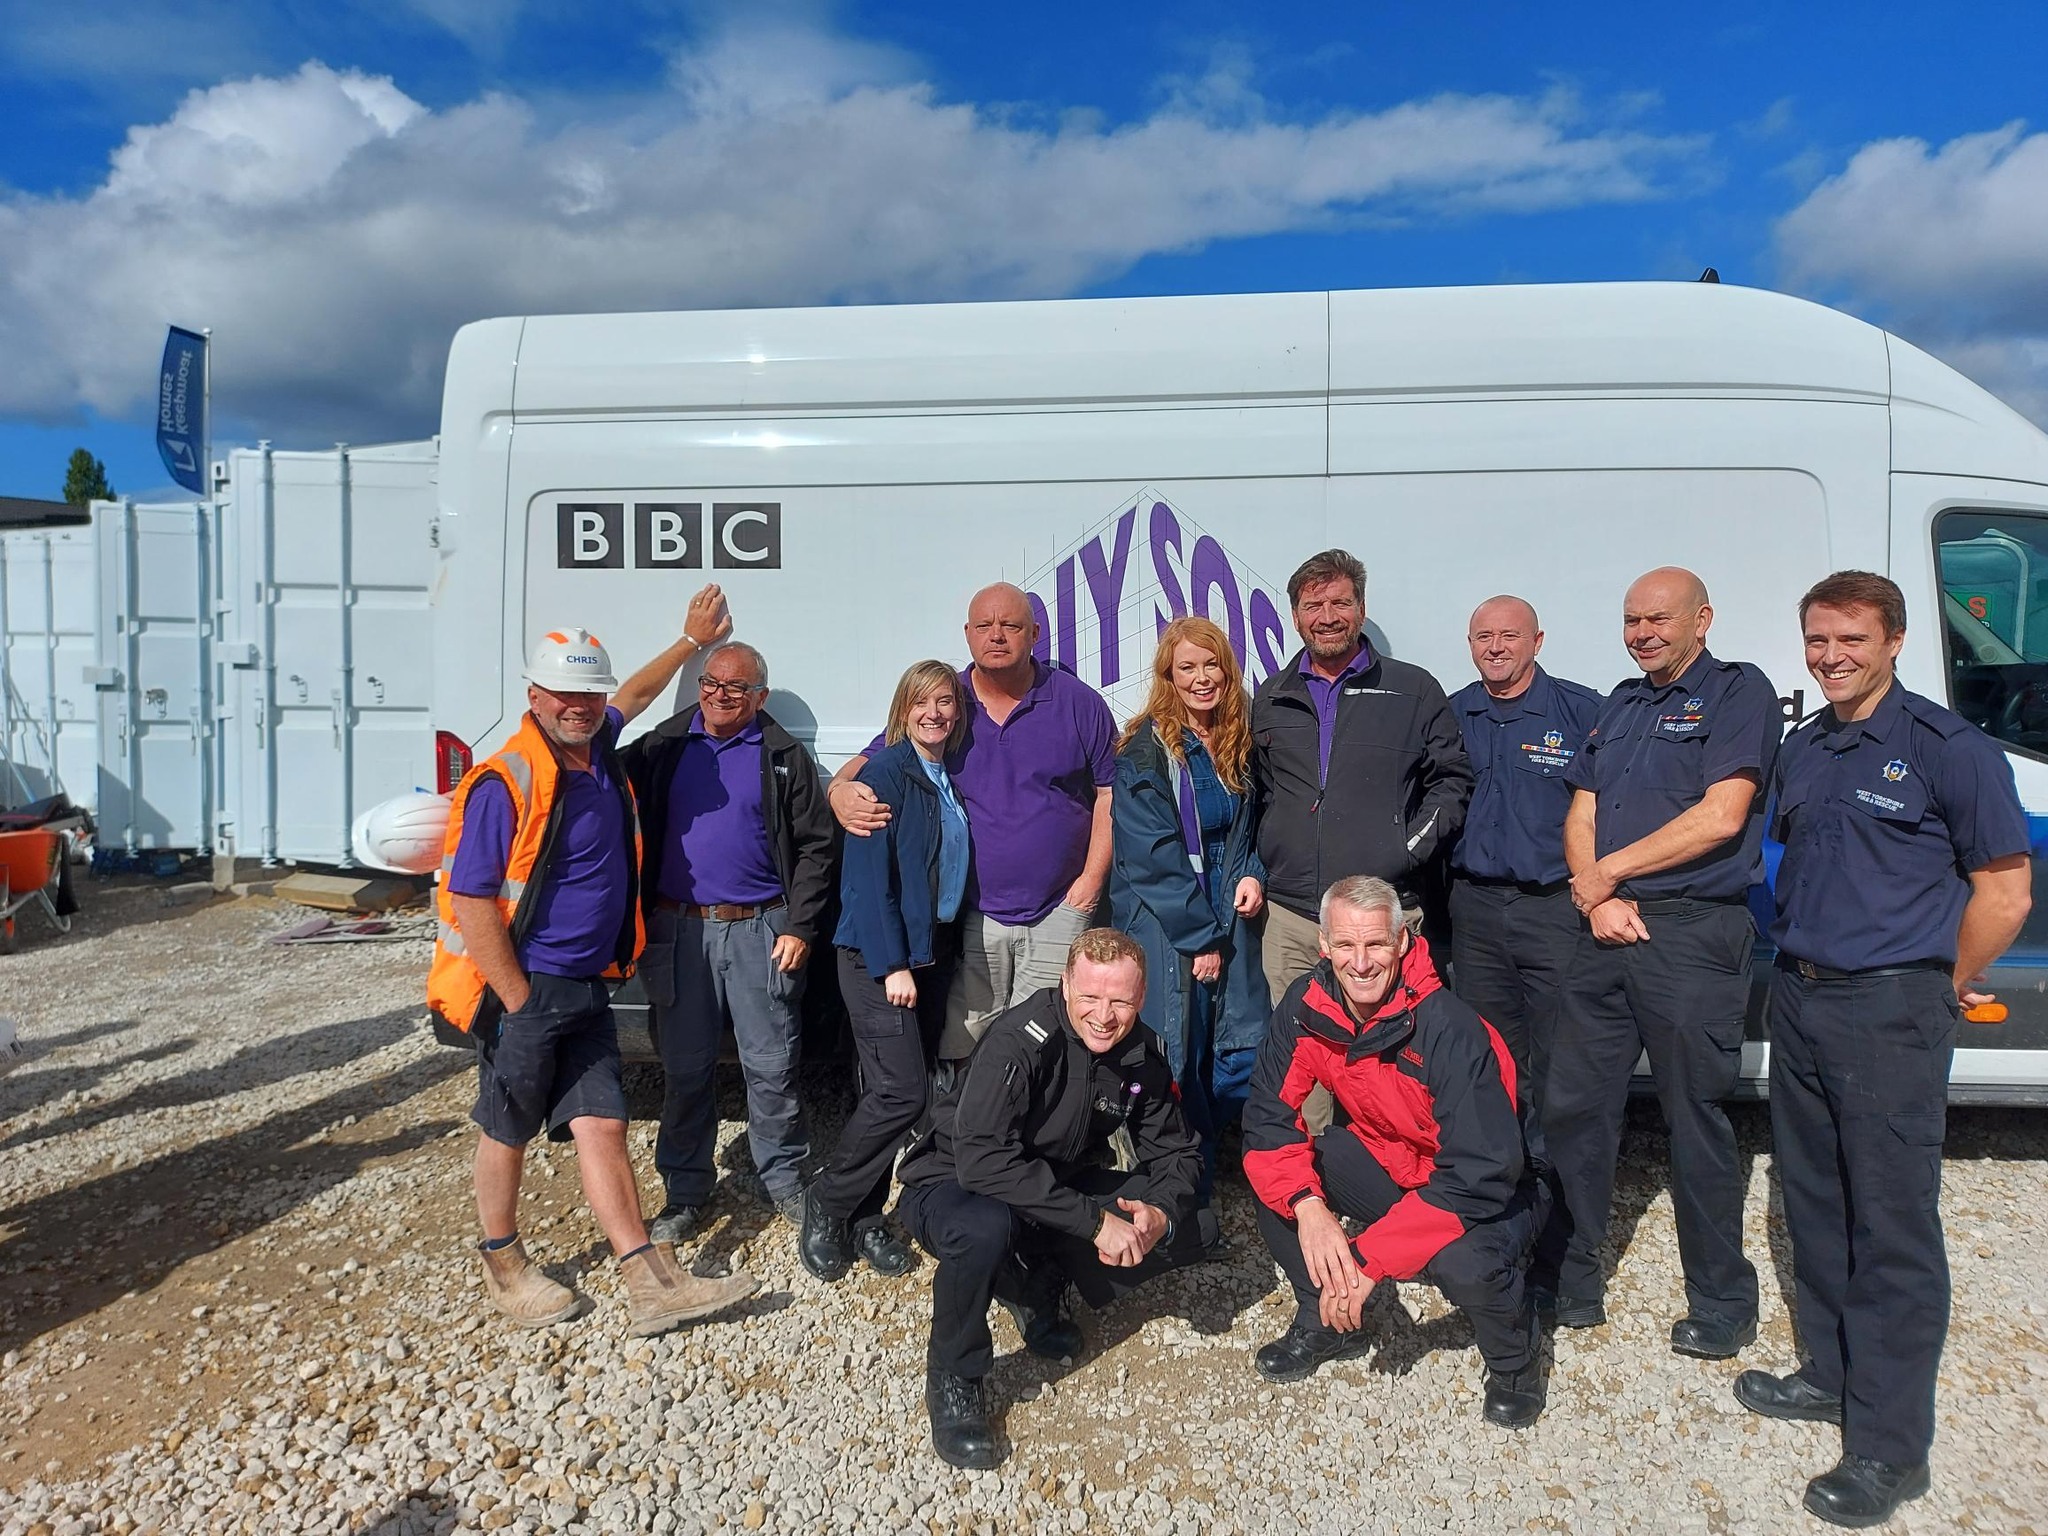 Crew in front of BBC van